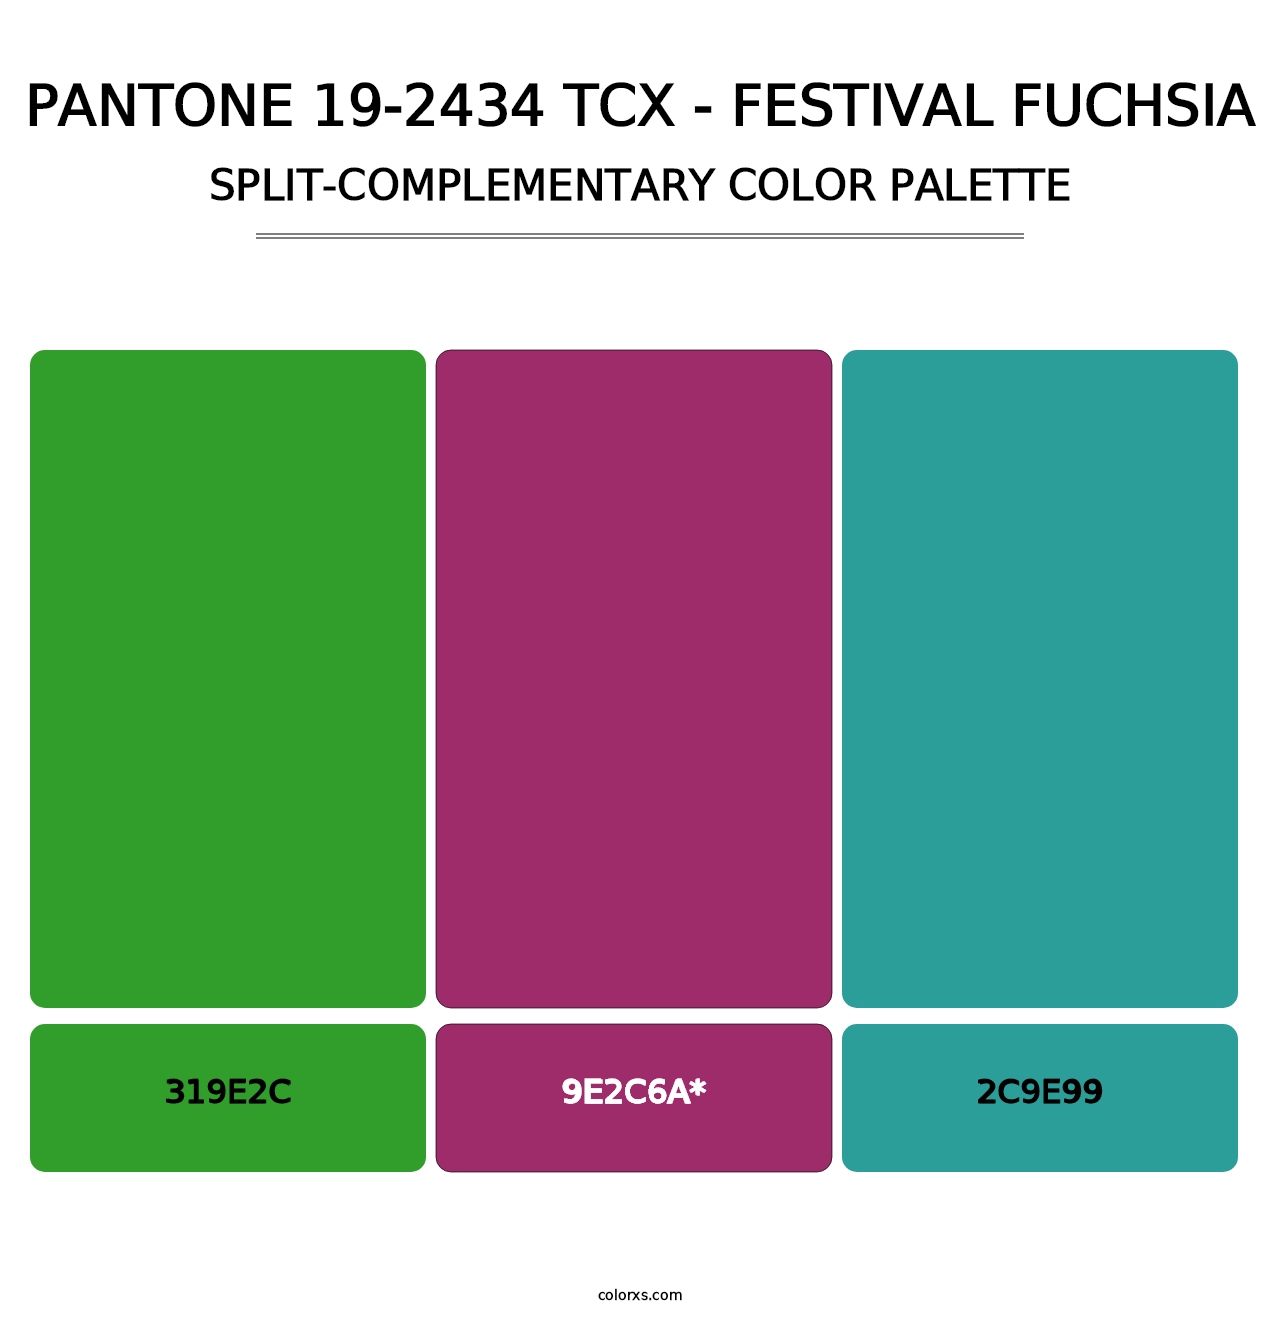 PANTONE 19-2434 TCX - Festival Fuchsia - Split-Complementary Color Palette